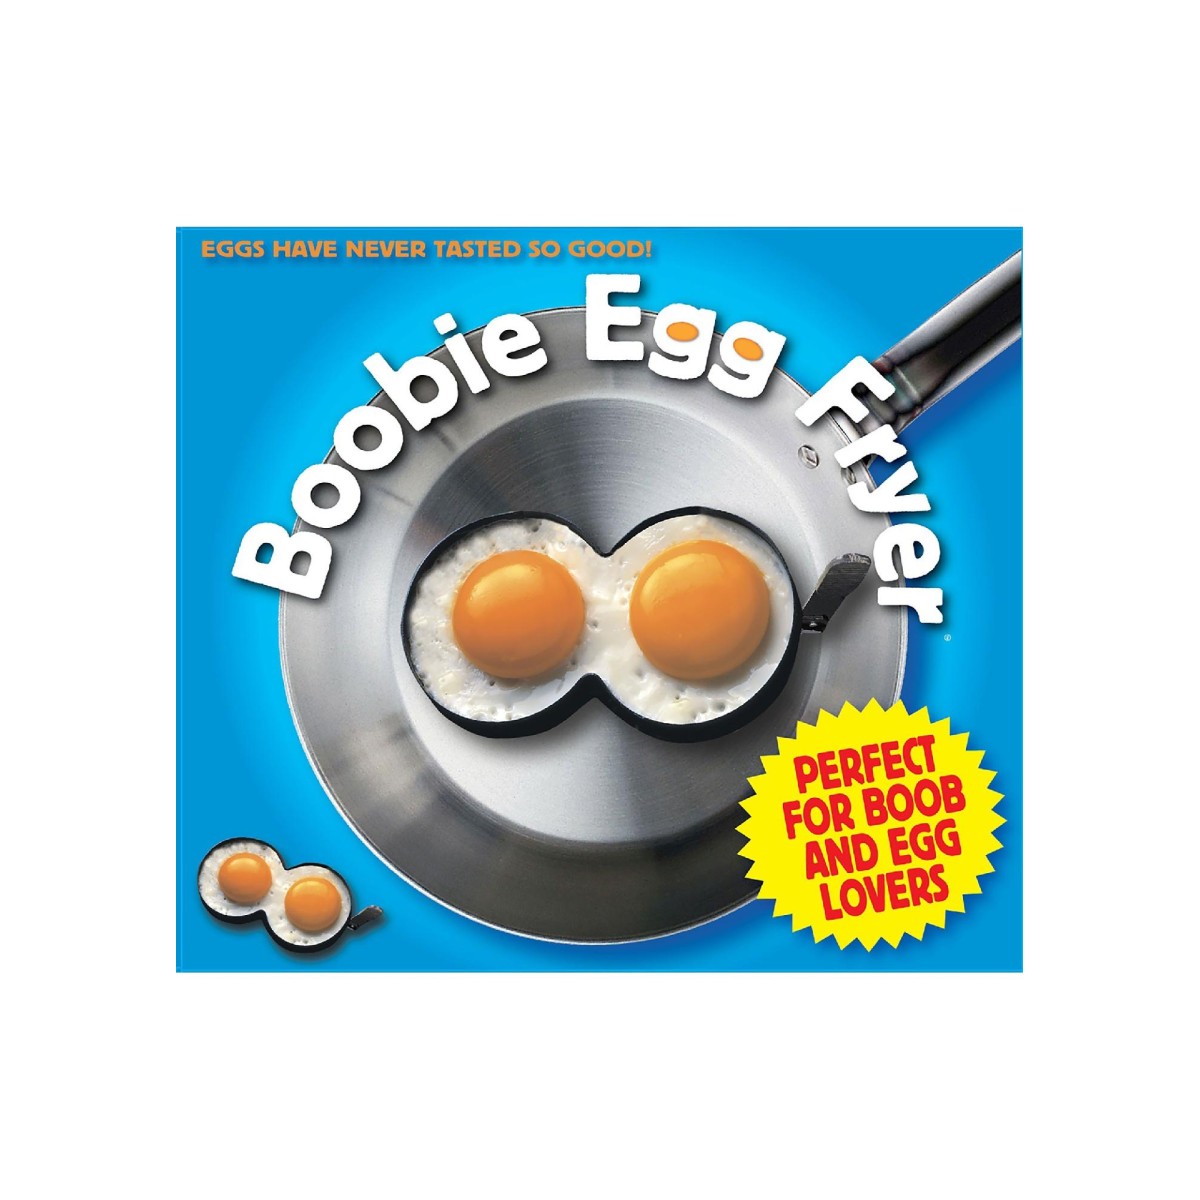 Accessorio per uova a forma di tette Boobie Egg Fryer